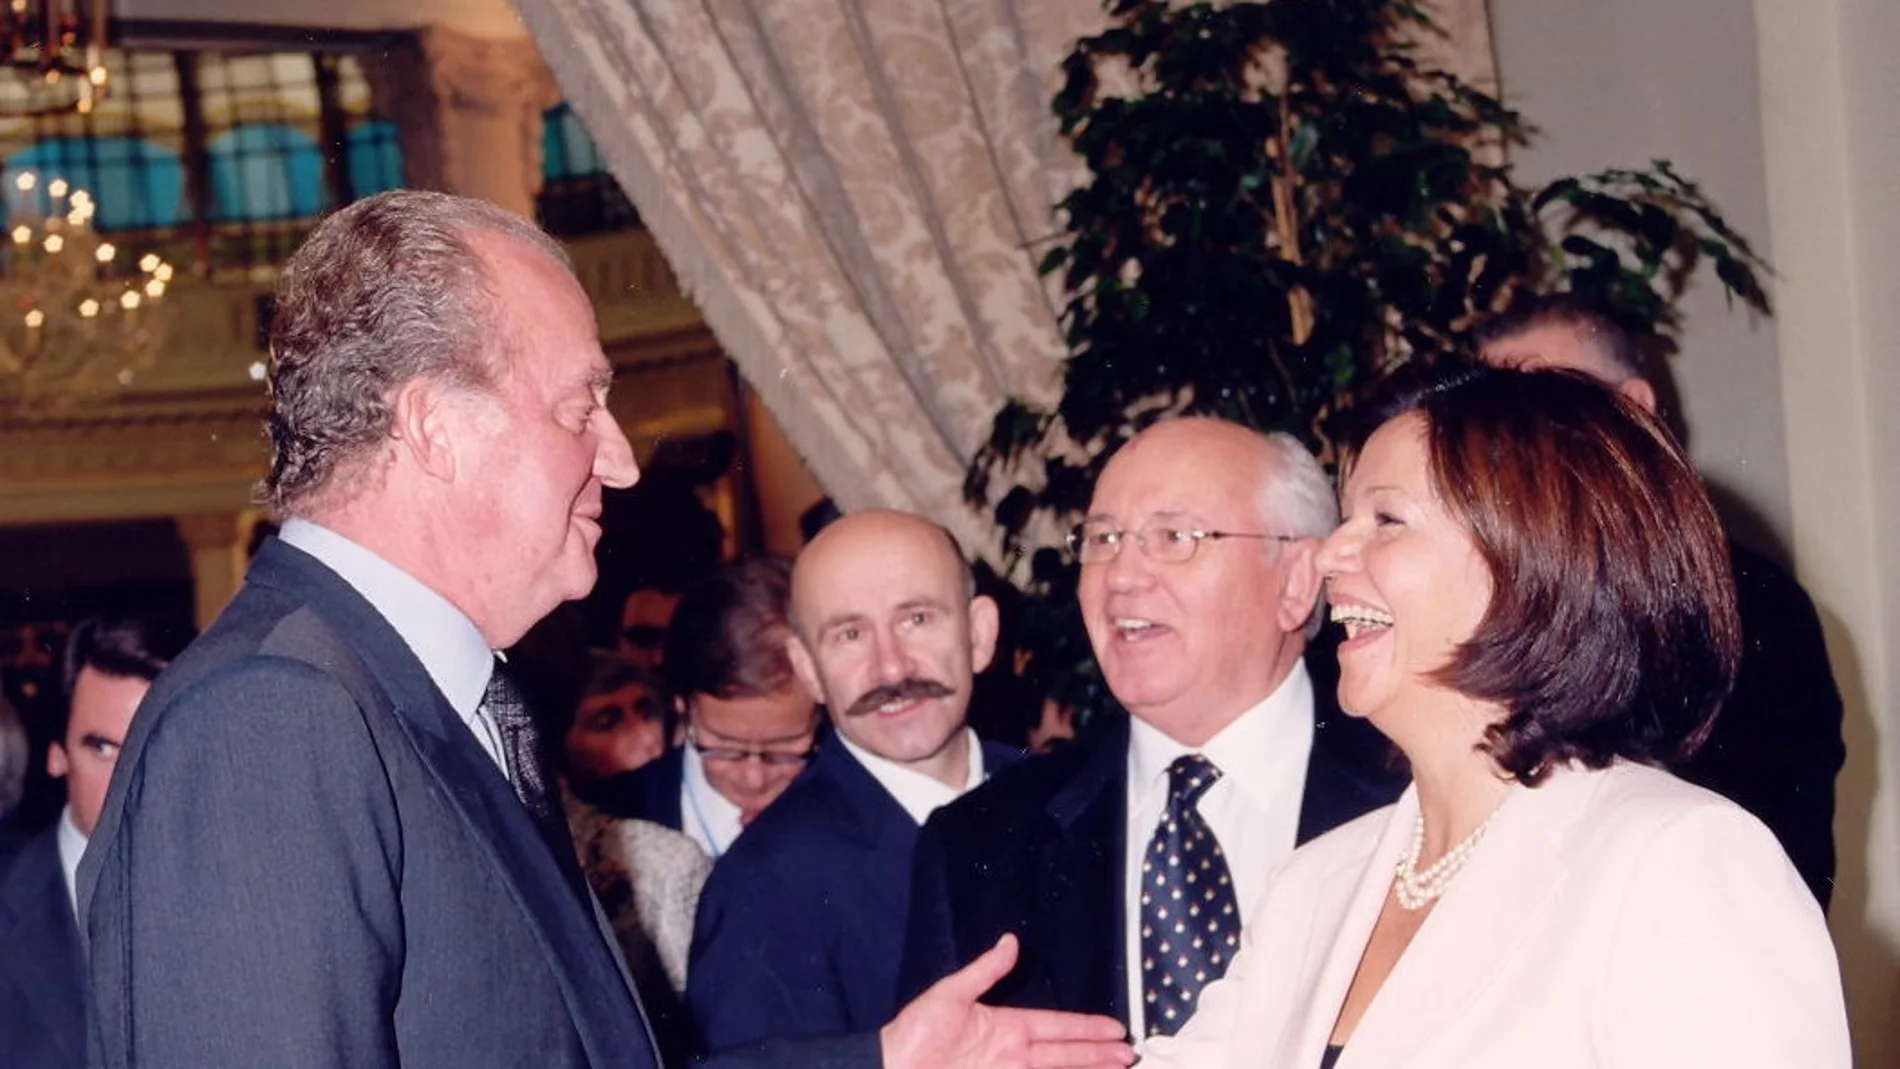 Momento irrepetible con Mijail Gorbachov y el Rey Juan Carlos